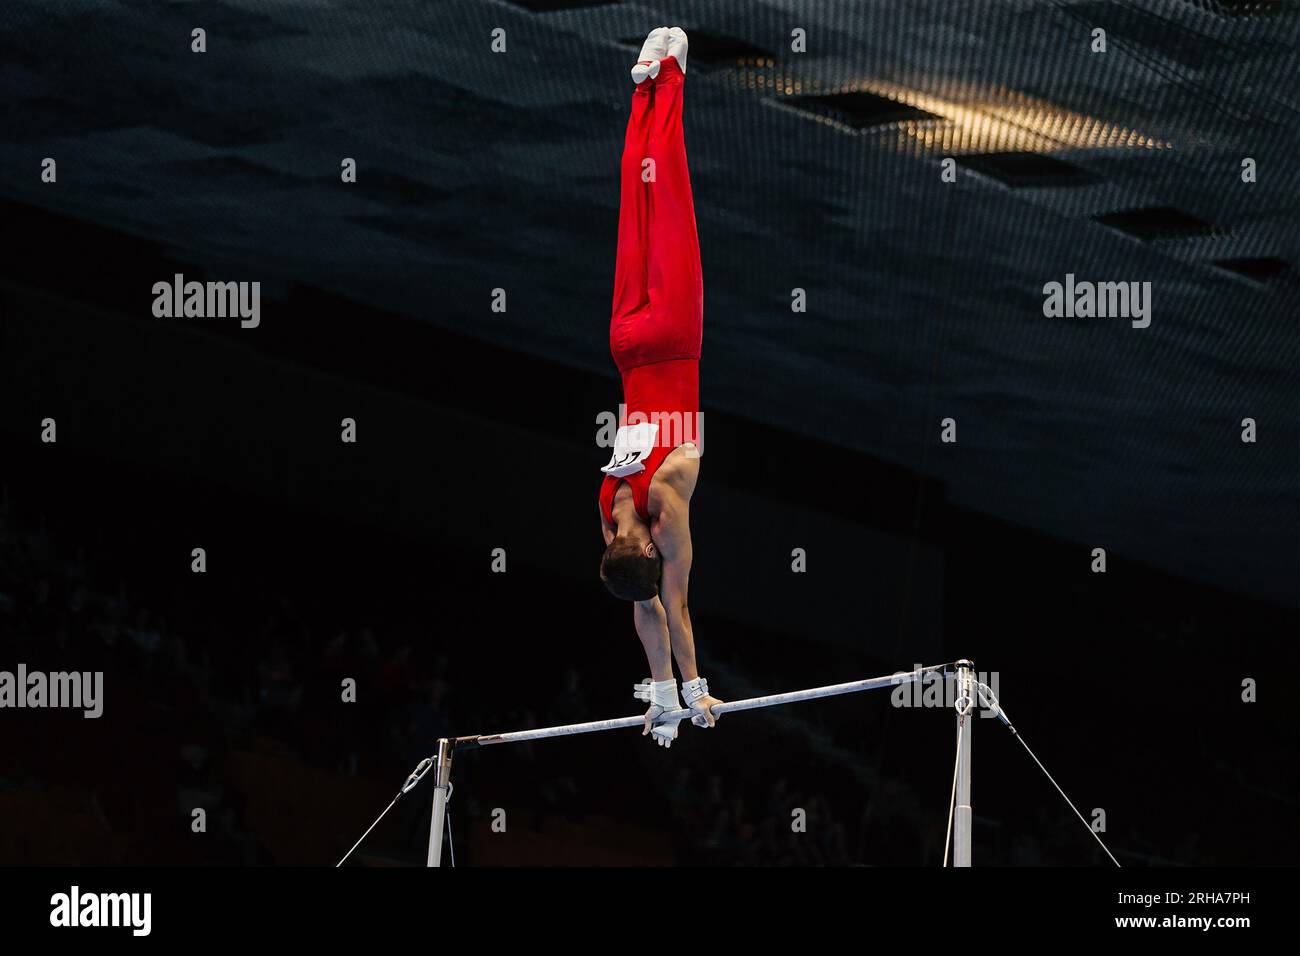 gymnastique exercice barre horizontale dans la gymnastique de championnat, élément handstand Banque D'Images